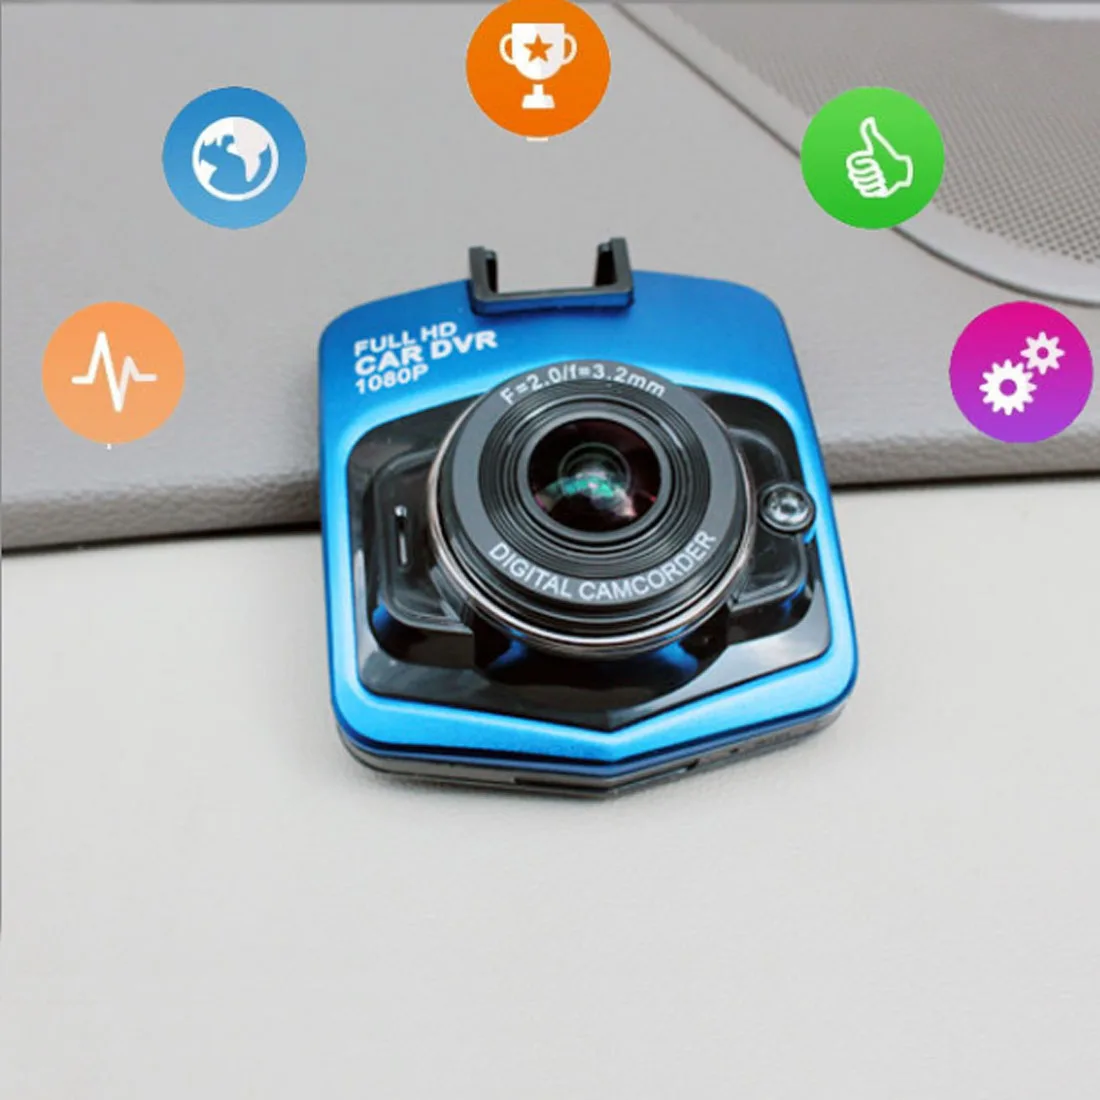 Dewtreetali SALE2.4 дюймов ЖК-экран вождения рекордер Автомобильный видеорегистратор с функцией ночного видения мини-видеокамеры камера видео видеорегистратор Dashcam автомобиль